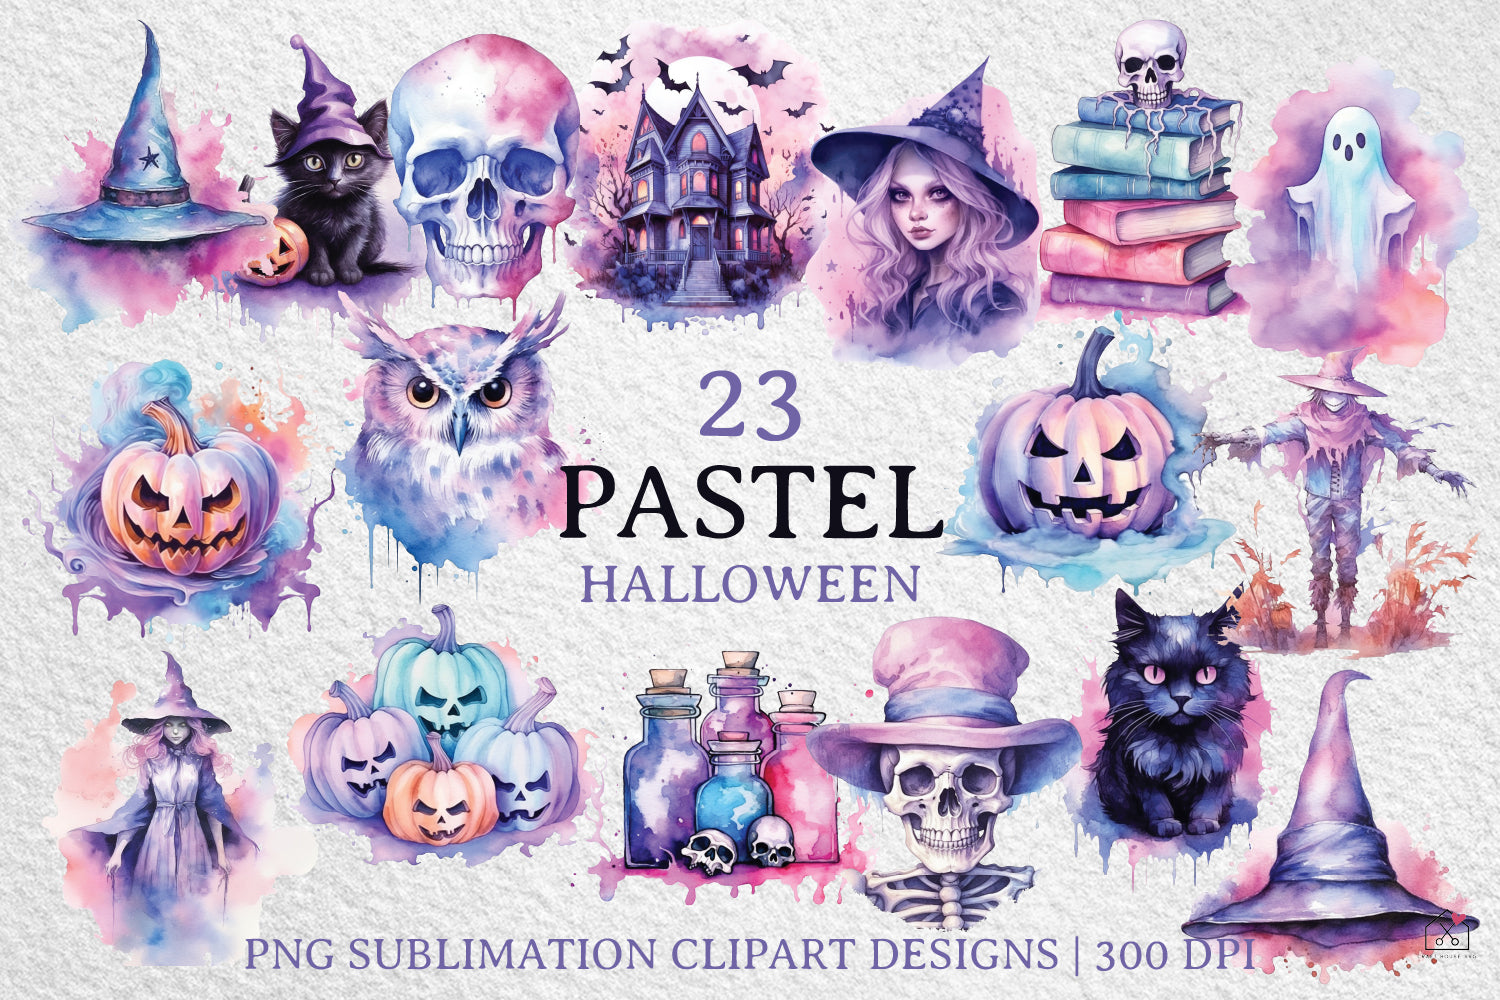 Pastel Halloween Sublimation Bundle Watercolor Clipart Designs PNG